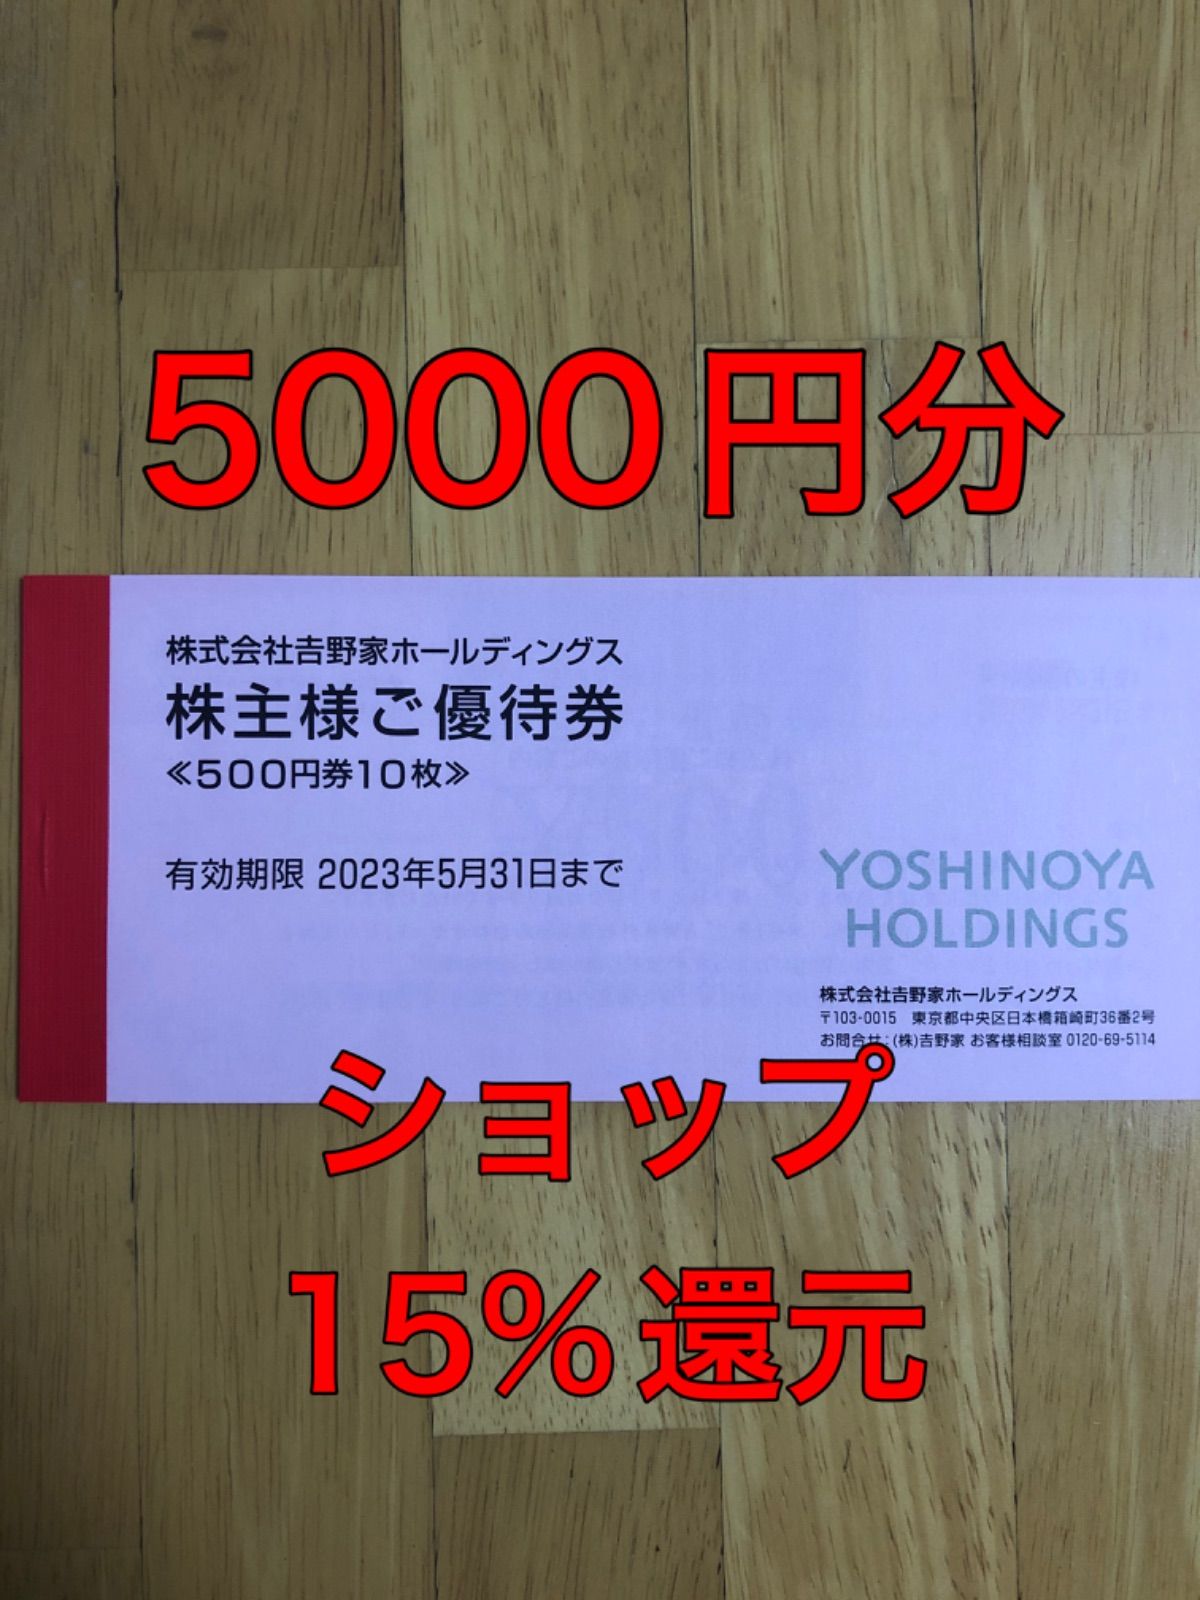 吉野家 株主優待券 5000円分 - さすけショップ - メルカリ